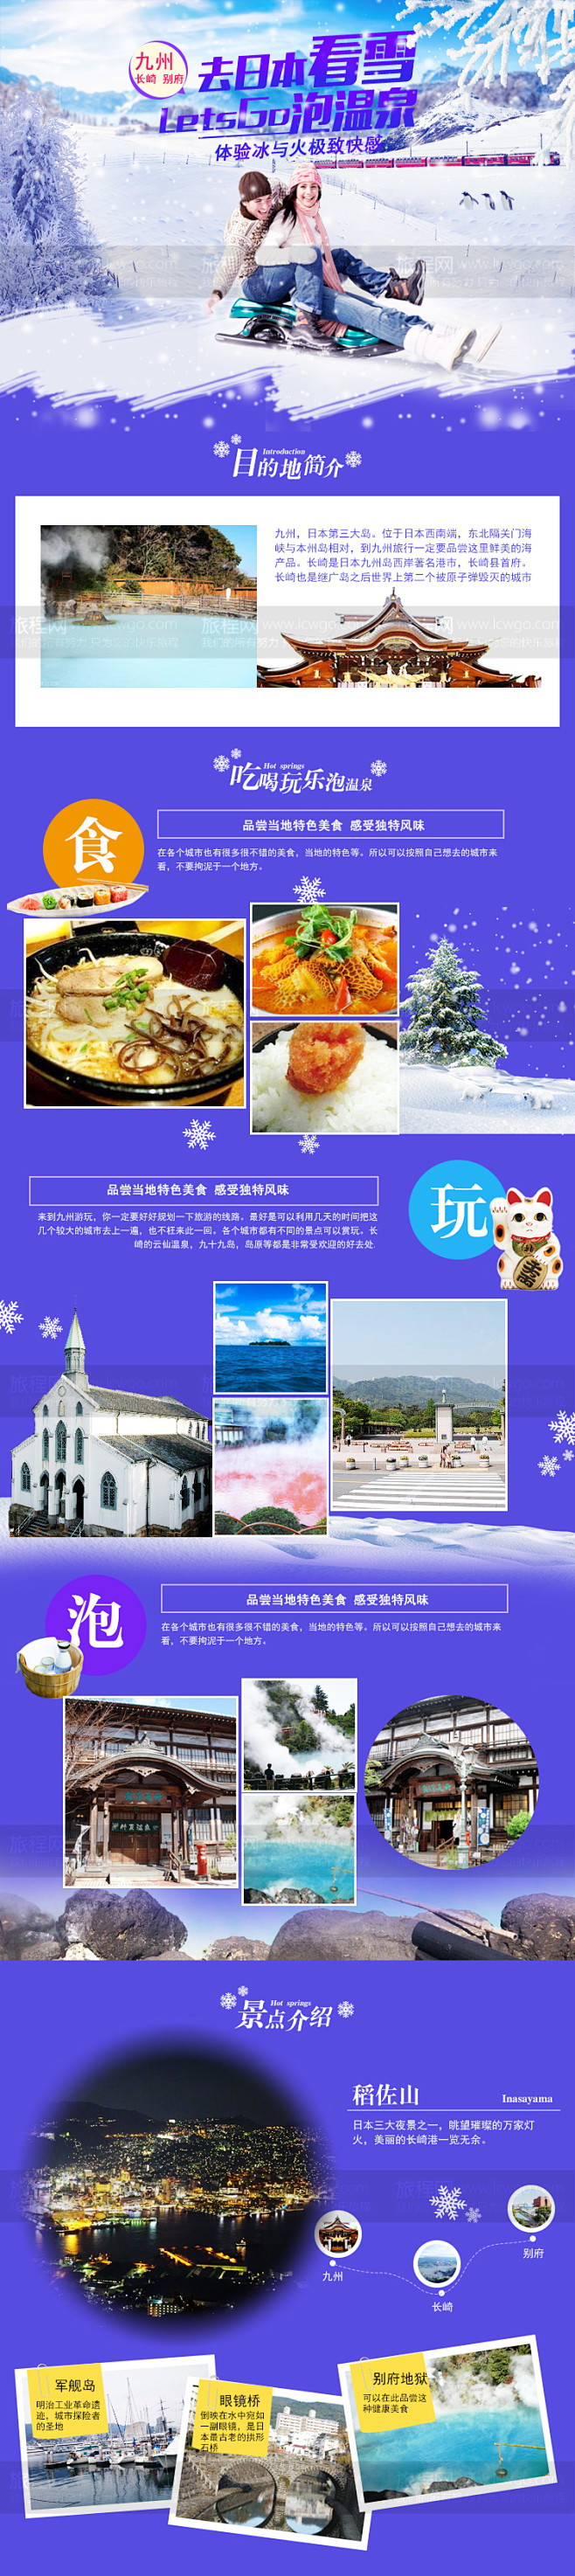 日本旅游详情页体验冰与火泡温泉九州旅行滑...